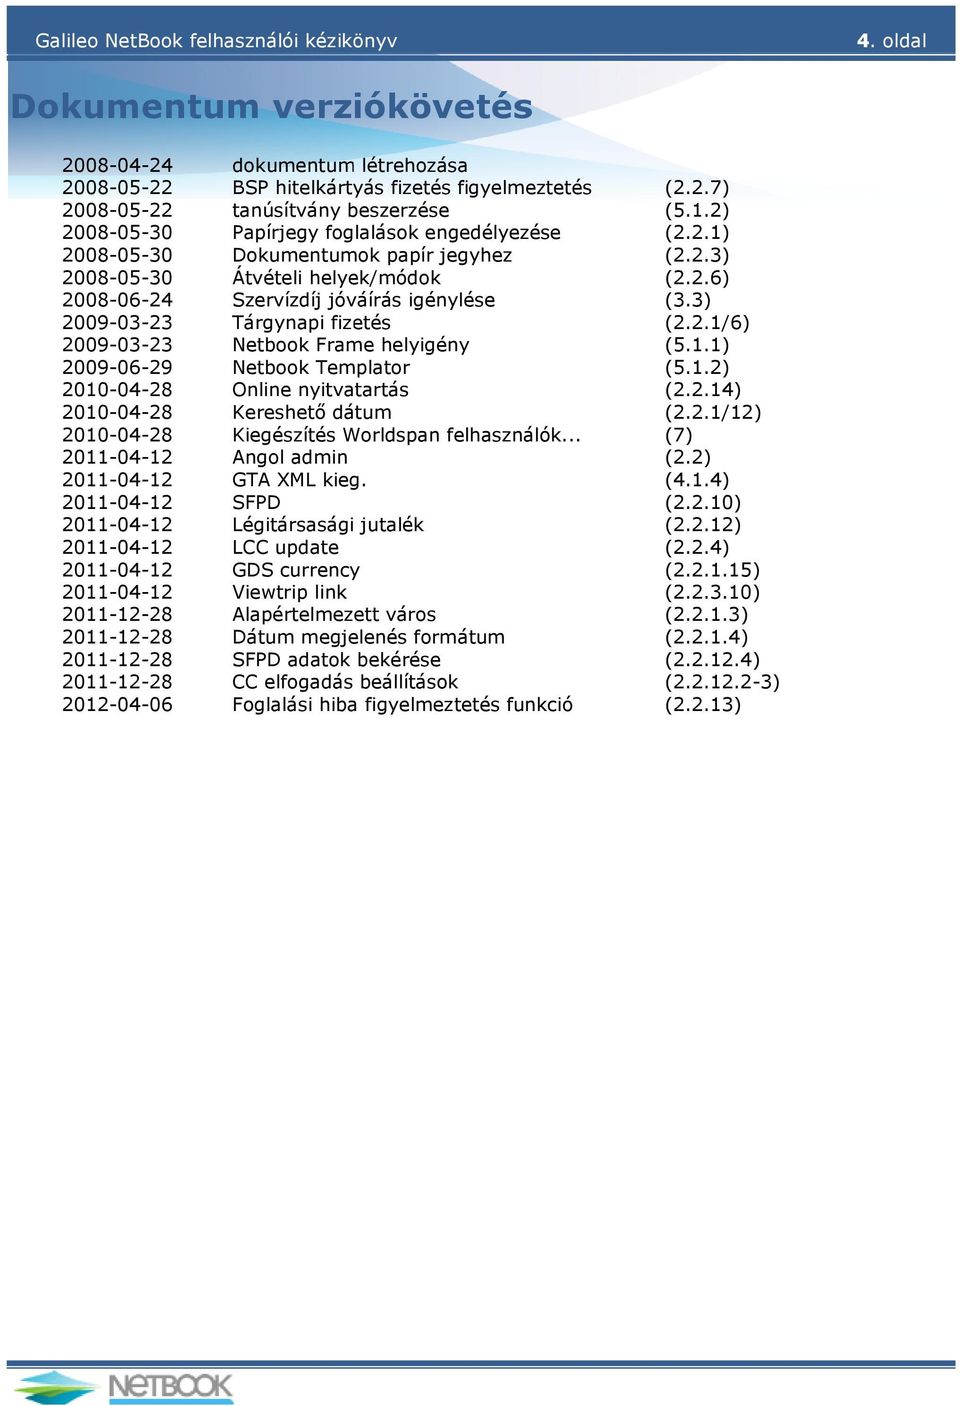 3) 2009-03-23 Tárgynapi fizetés (2.2.1/6) 2009-03-23 Netbook Frame helyigény (5.1.1) 2009-06-29 Netbook Templator (5.1.2) 2010-04-28 Online nyitvatartás (2.2.14) 2010-04-28 Kereshető dátum (2.2.1/12) 2010-04-28 Kiegészítés Worldspan felhasználók.